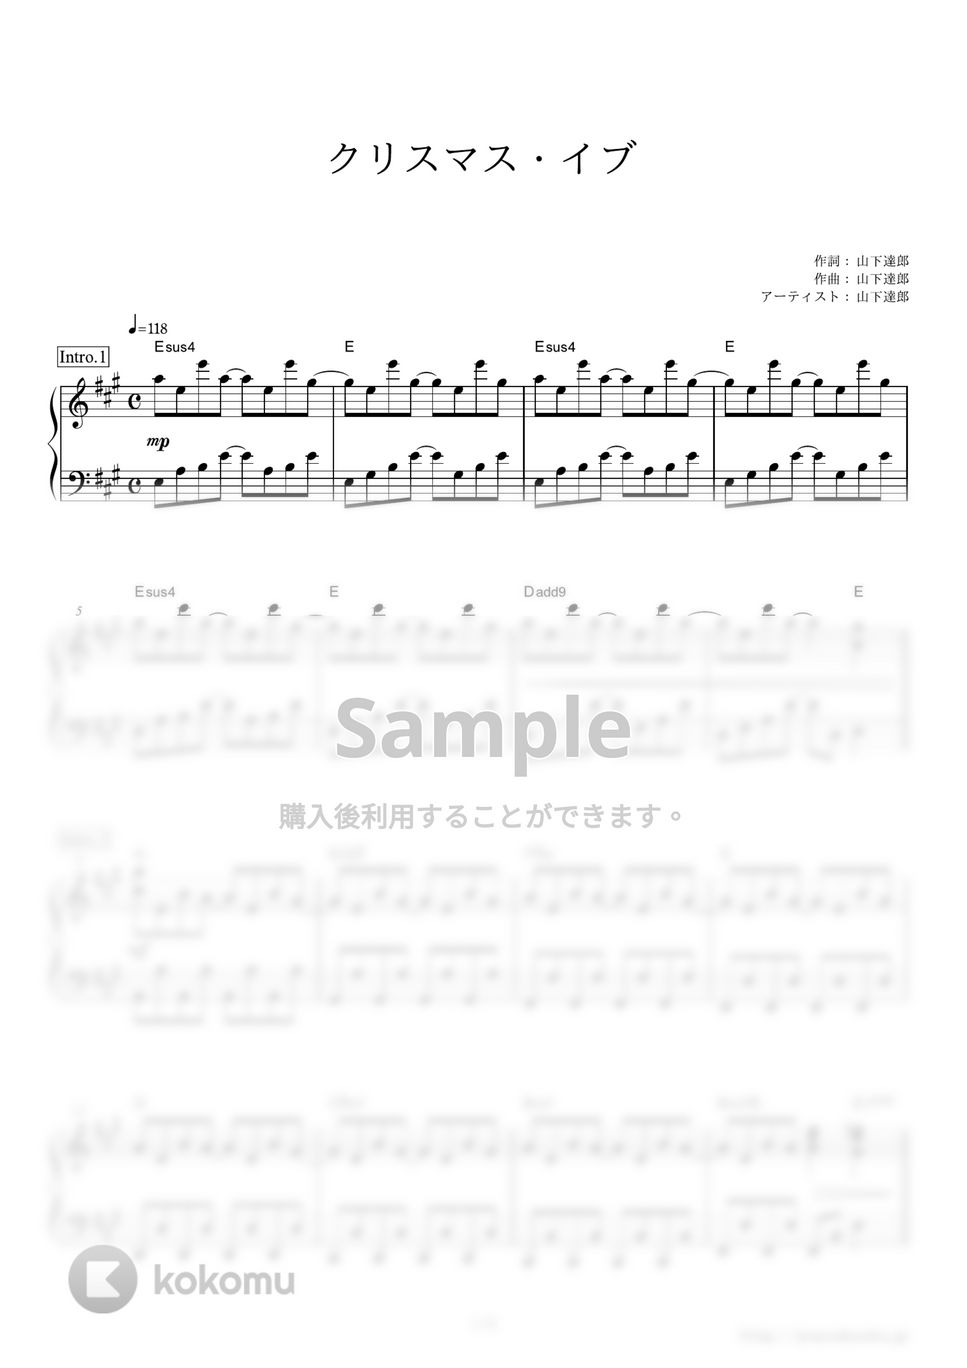 山下達郎 - クリスマス・イブ (JR東海『ホームタウン・エクスプレス（X'mas編）』CMソング) by ピアノの本棚